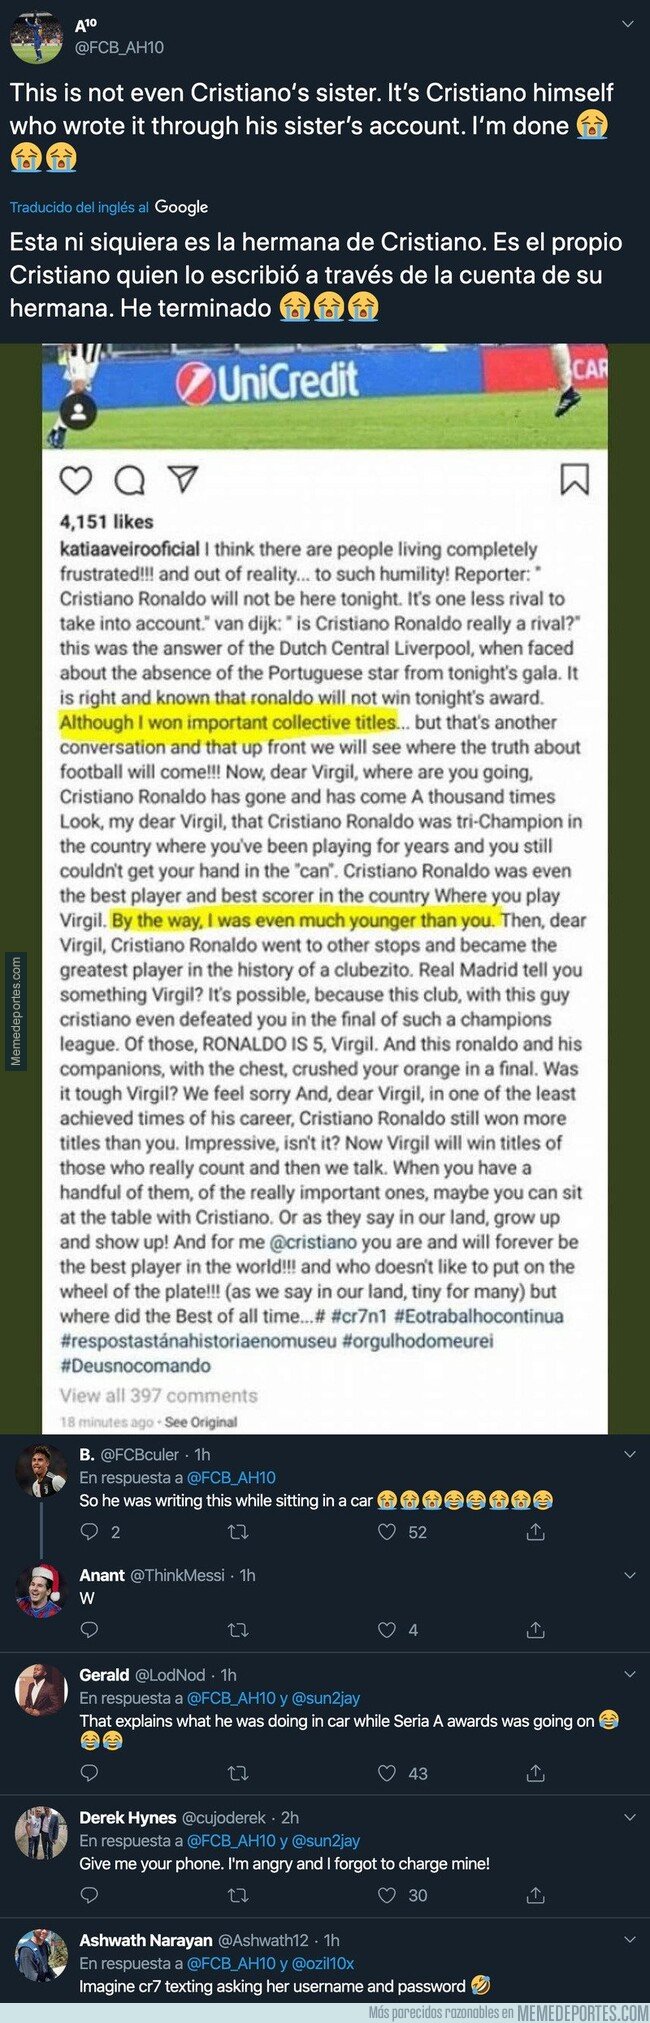 1092588 - Esto es tremendo: Cristiano Ronaldo podría haber escrito por este detalle este texto llorando por el Balón de Oro en el Instagram de su hermana